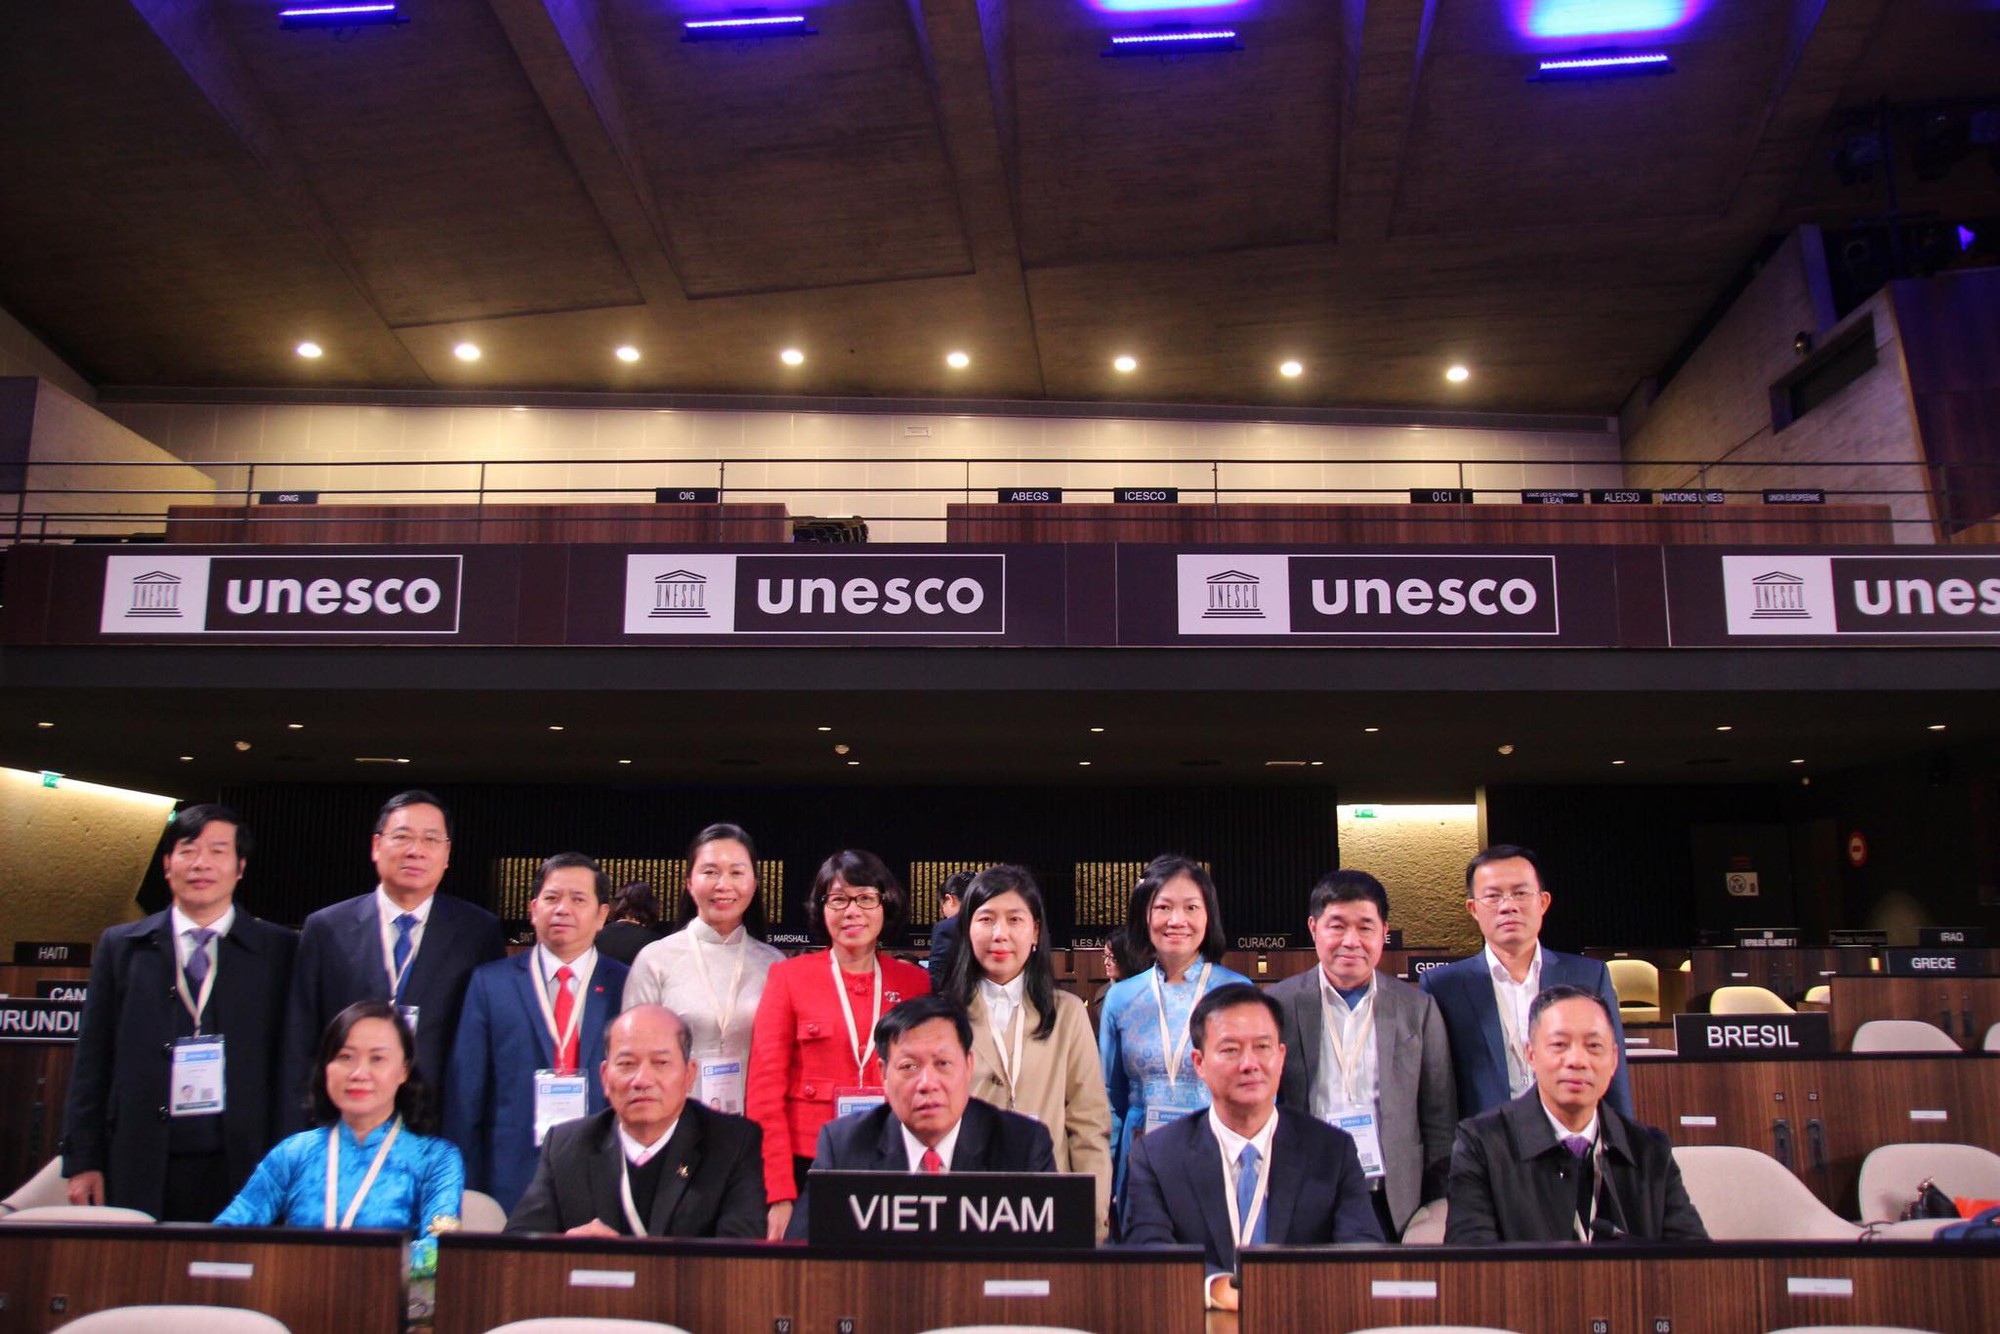 Thứ trưởng Bộ Y tế Đỗ Xuân Tuyên tham dự kỳ họp lần thứ 42 Đại Hội đồng UNESCO- Ảnh 1.